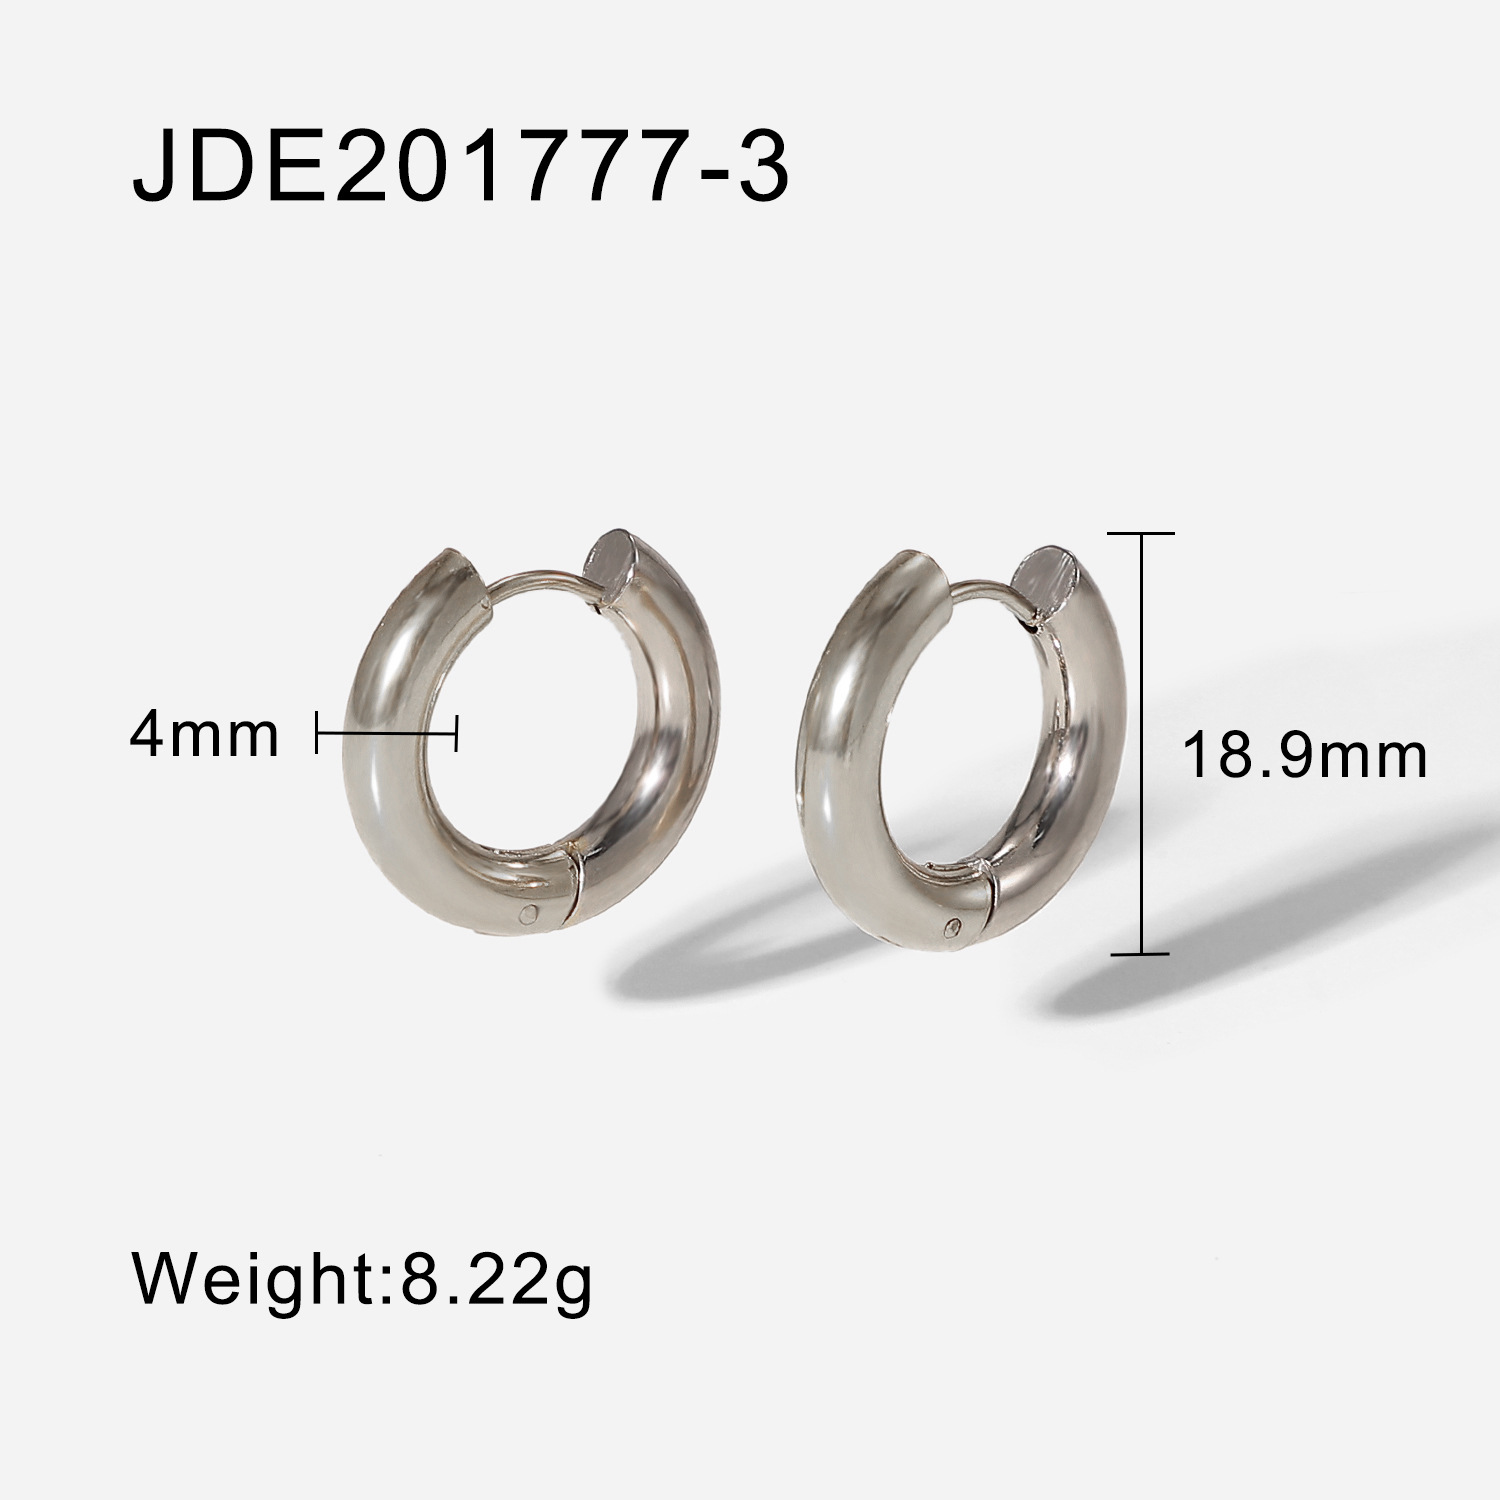 3:JDE201777-3